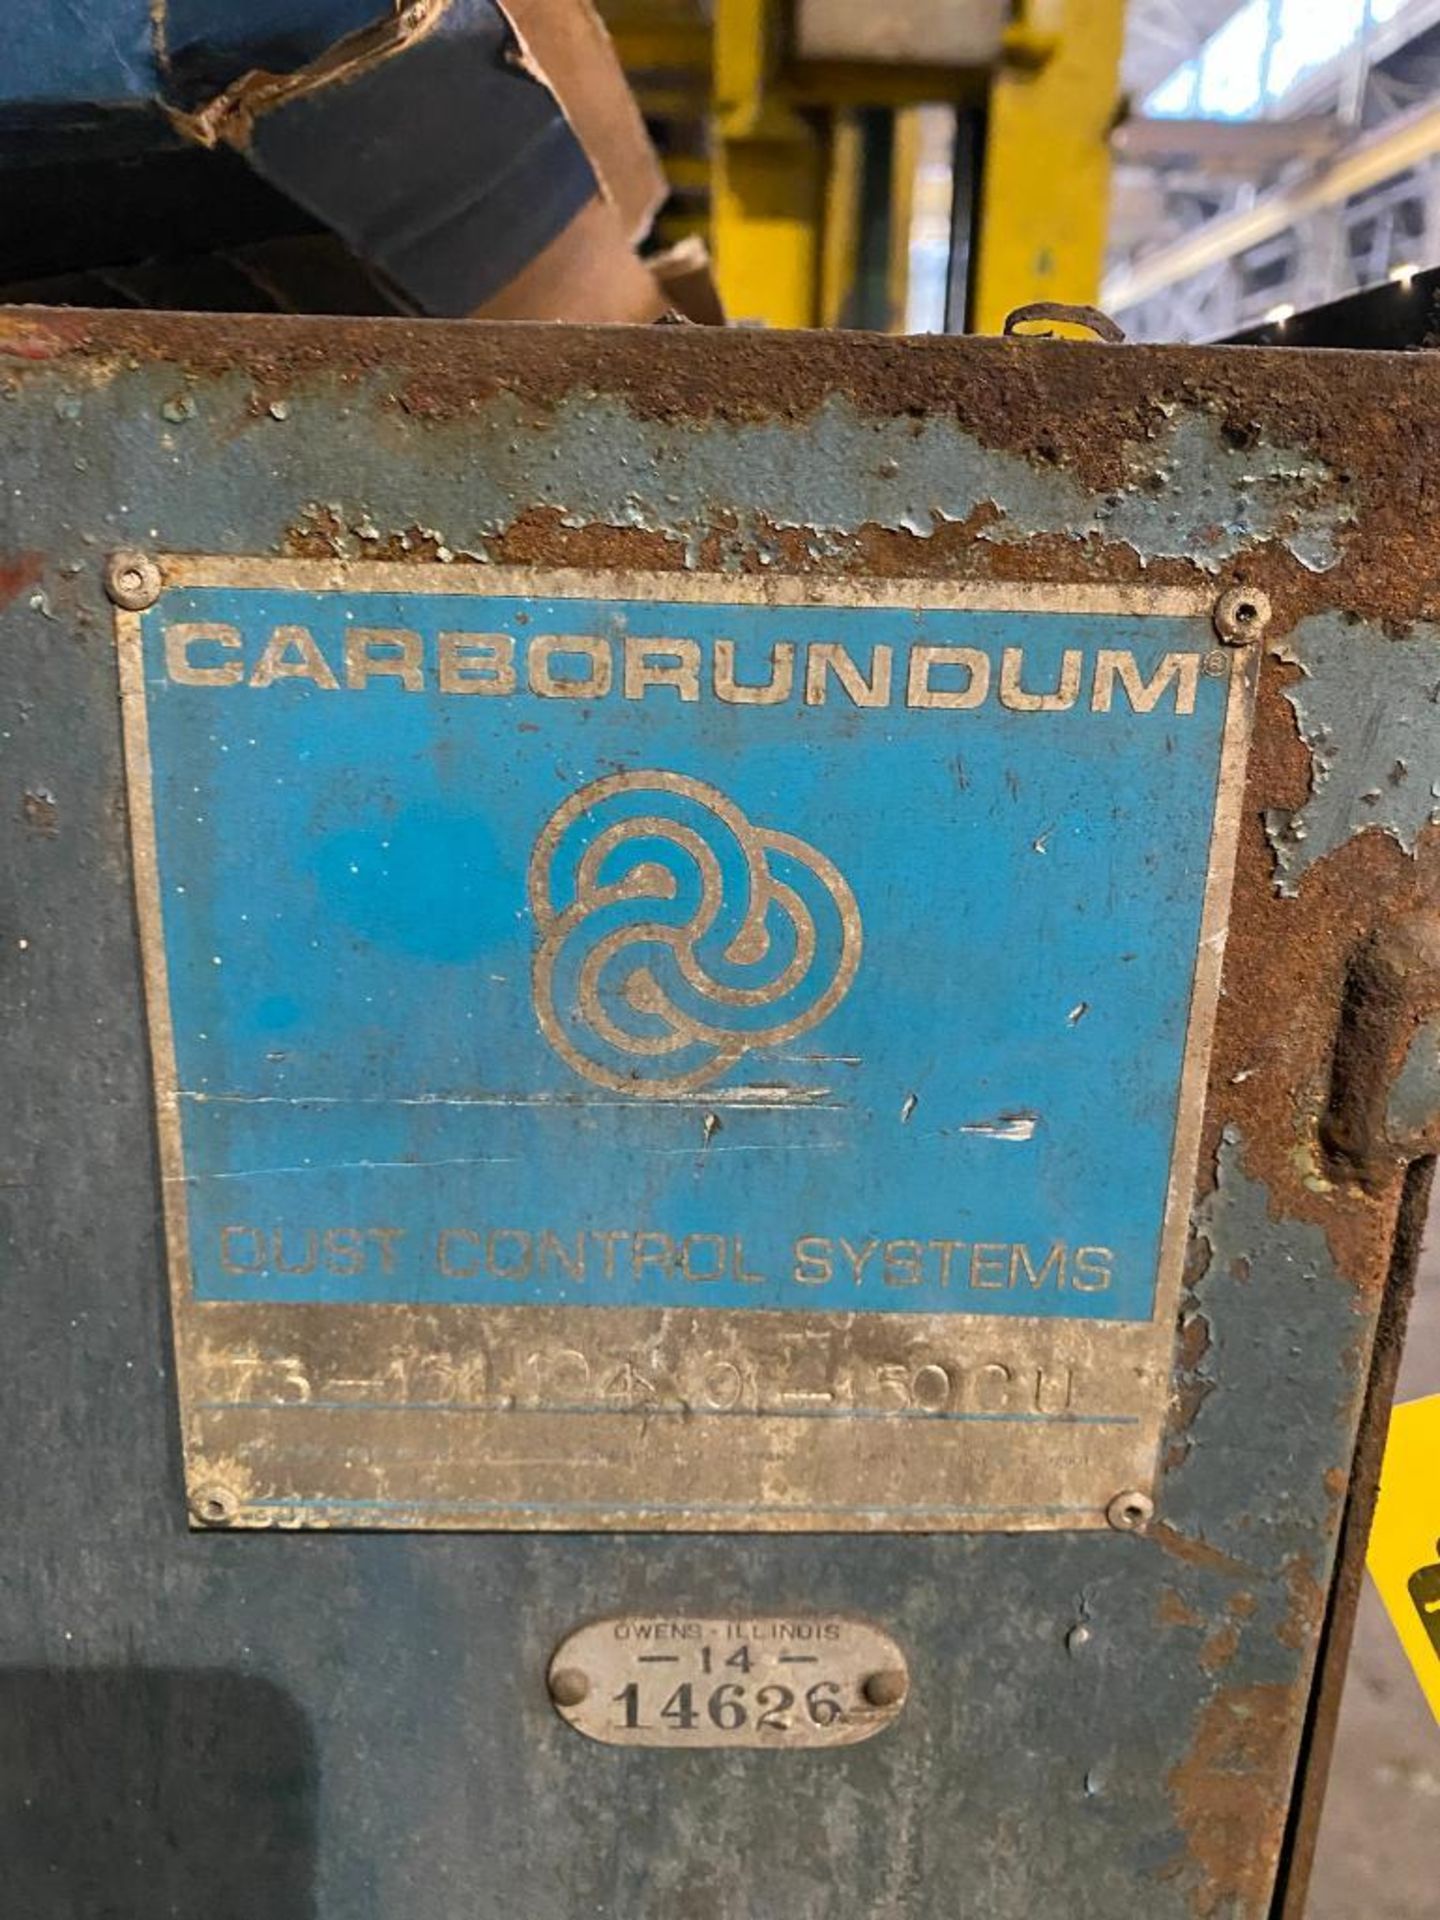 Carborundum Dust Collector - Image 2 of 2